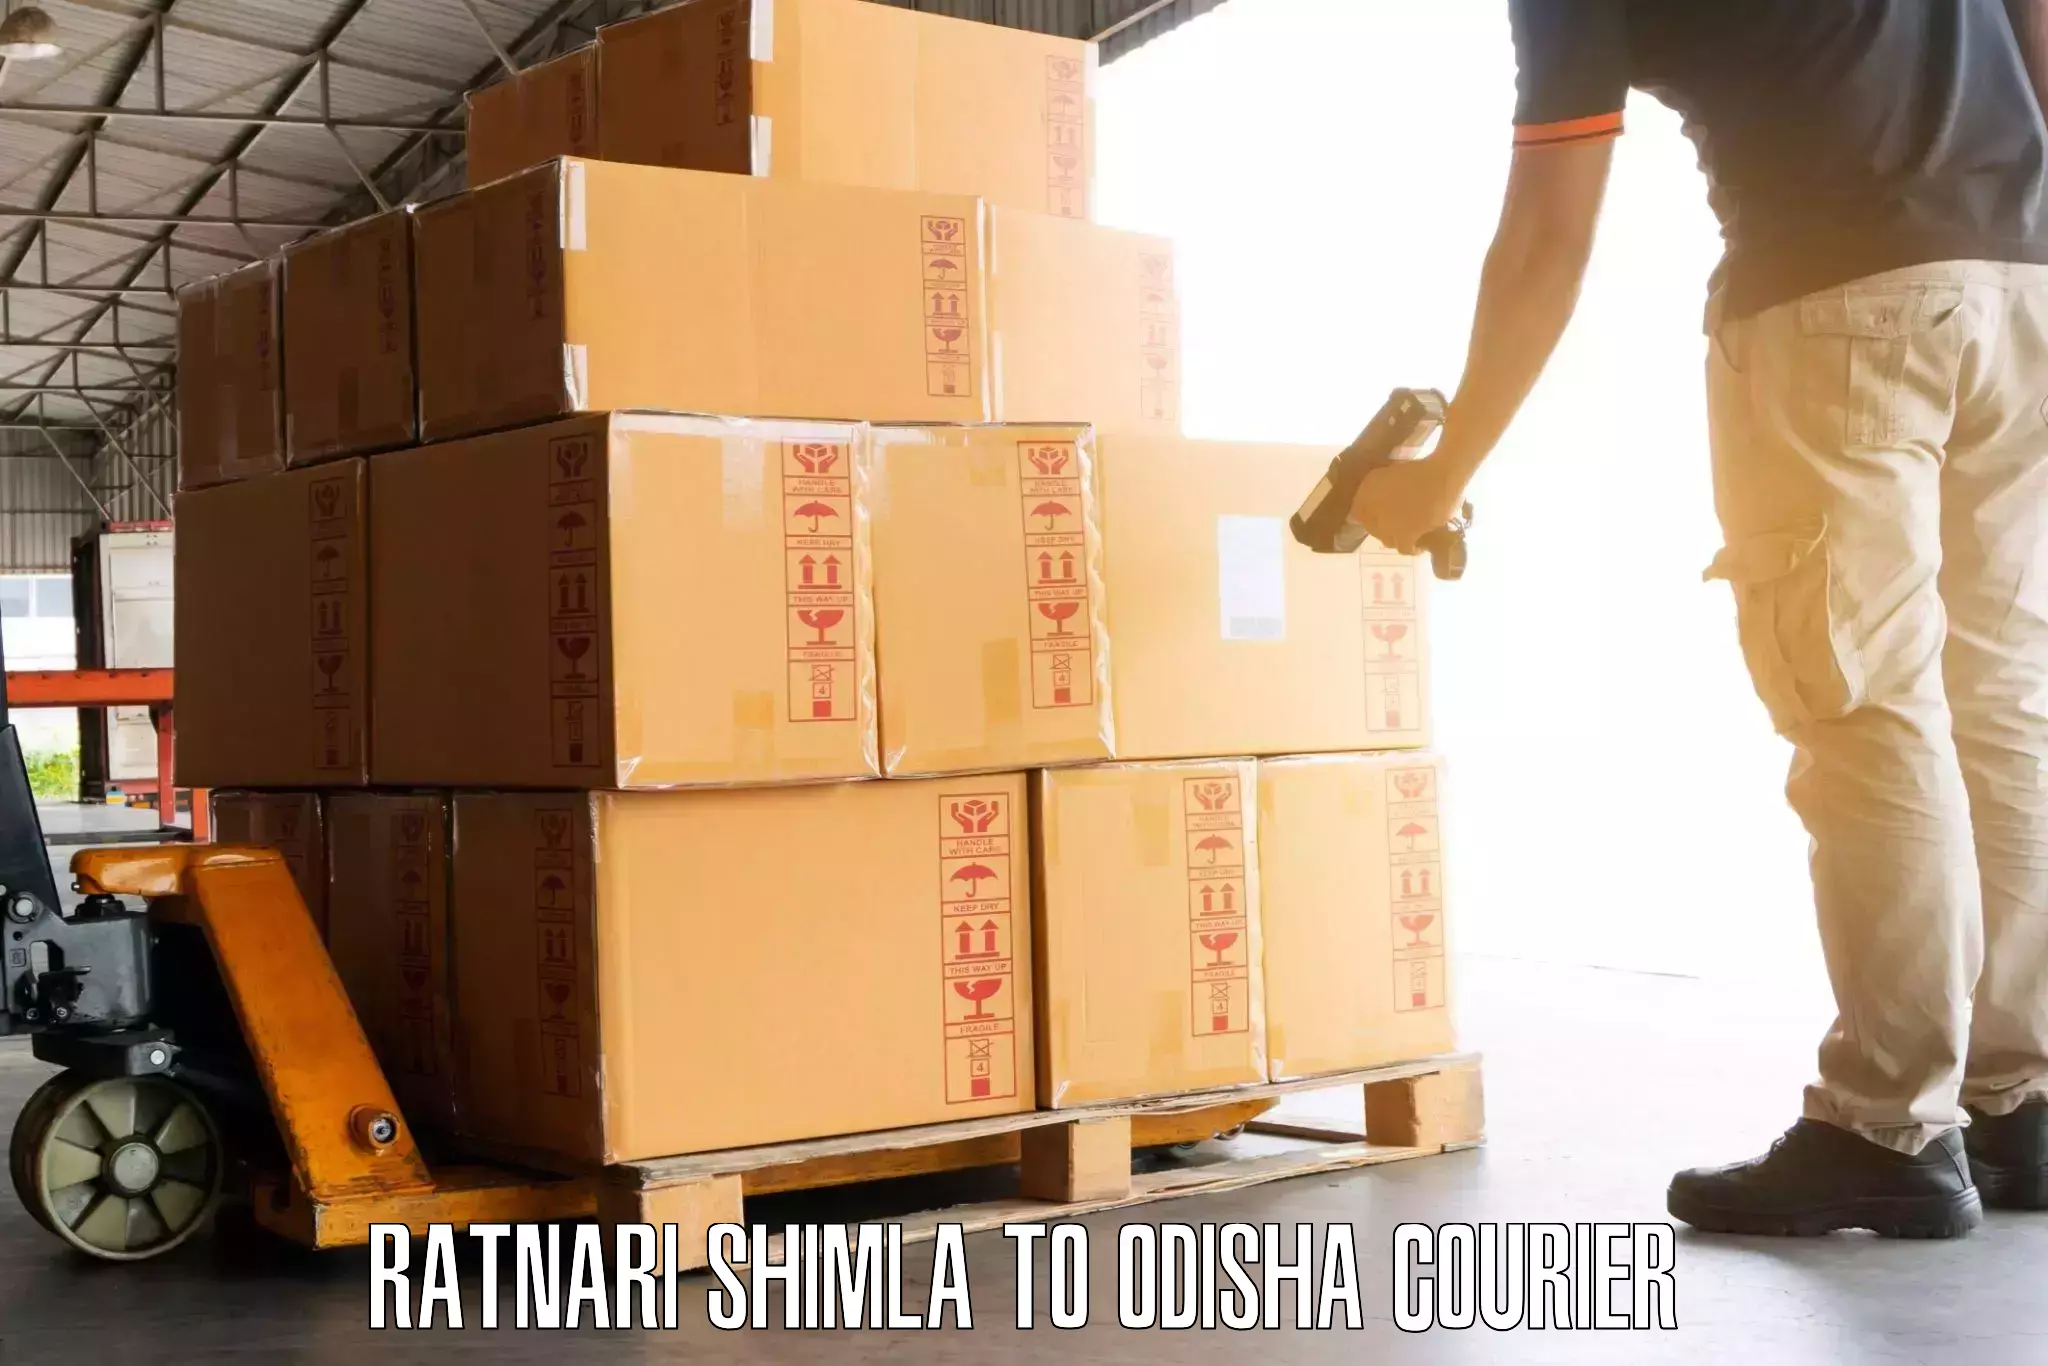 Luggage shipment strategy Ratnari Shimla to Bhutasarasingi